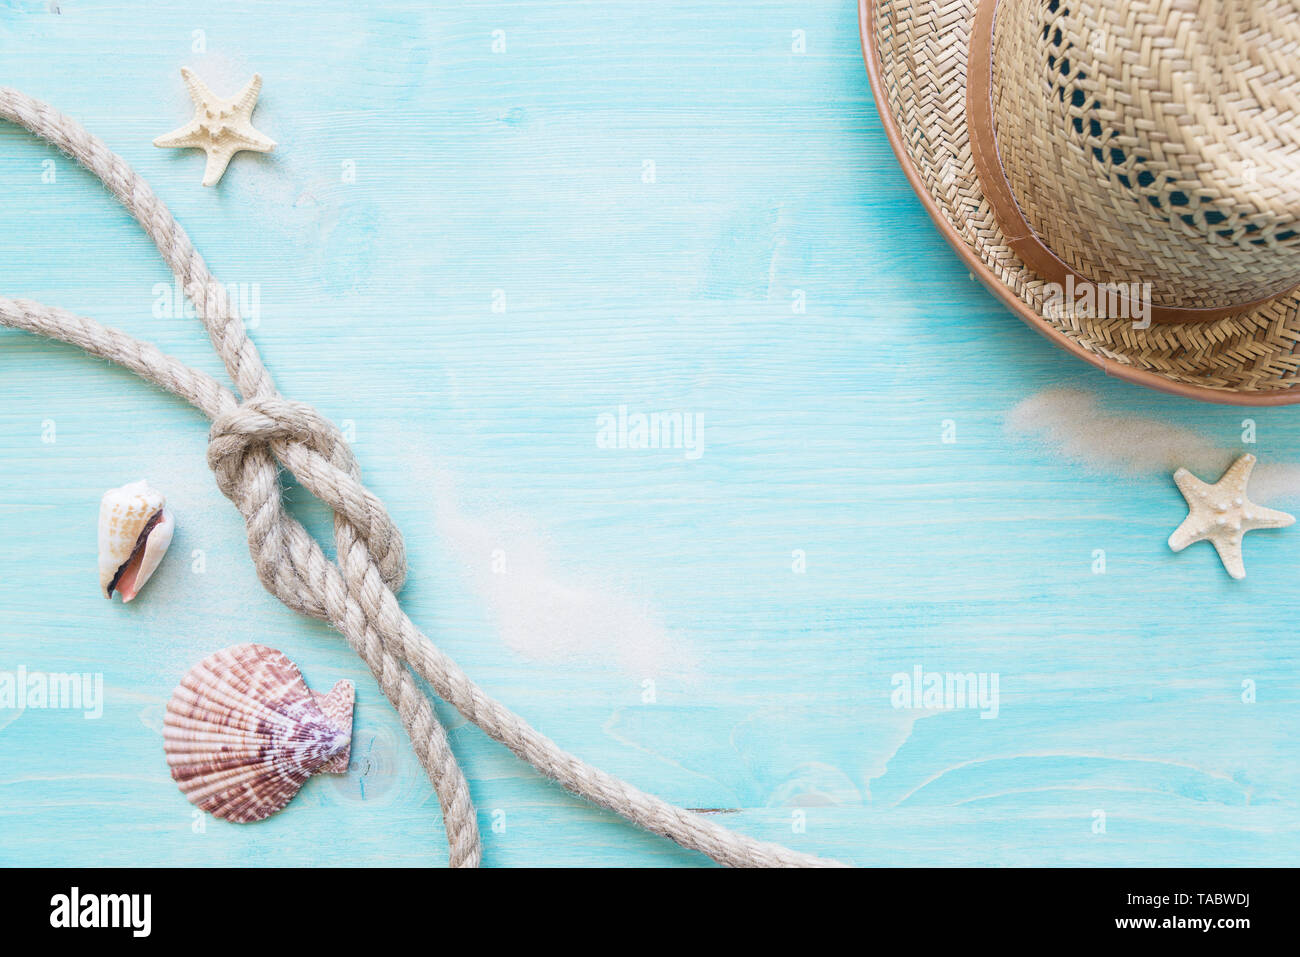 Corde de chanvre brut knot, la mer, des étoiles de hells et chapeau de paille sont sur le fond bleu pâle terrasse en bois. Concept Marine Banque D'Images